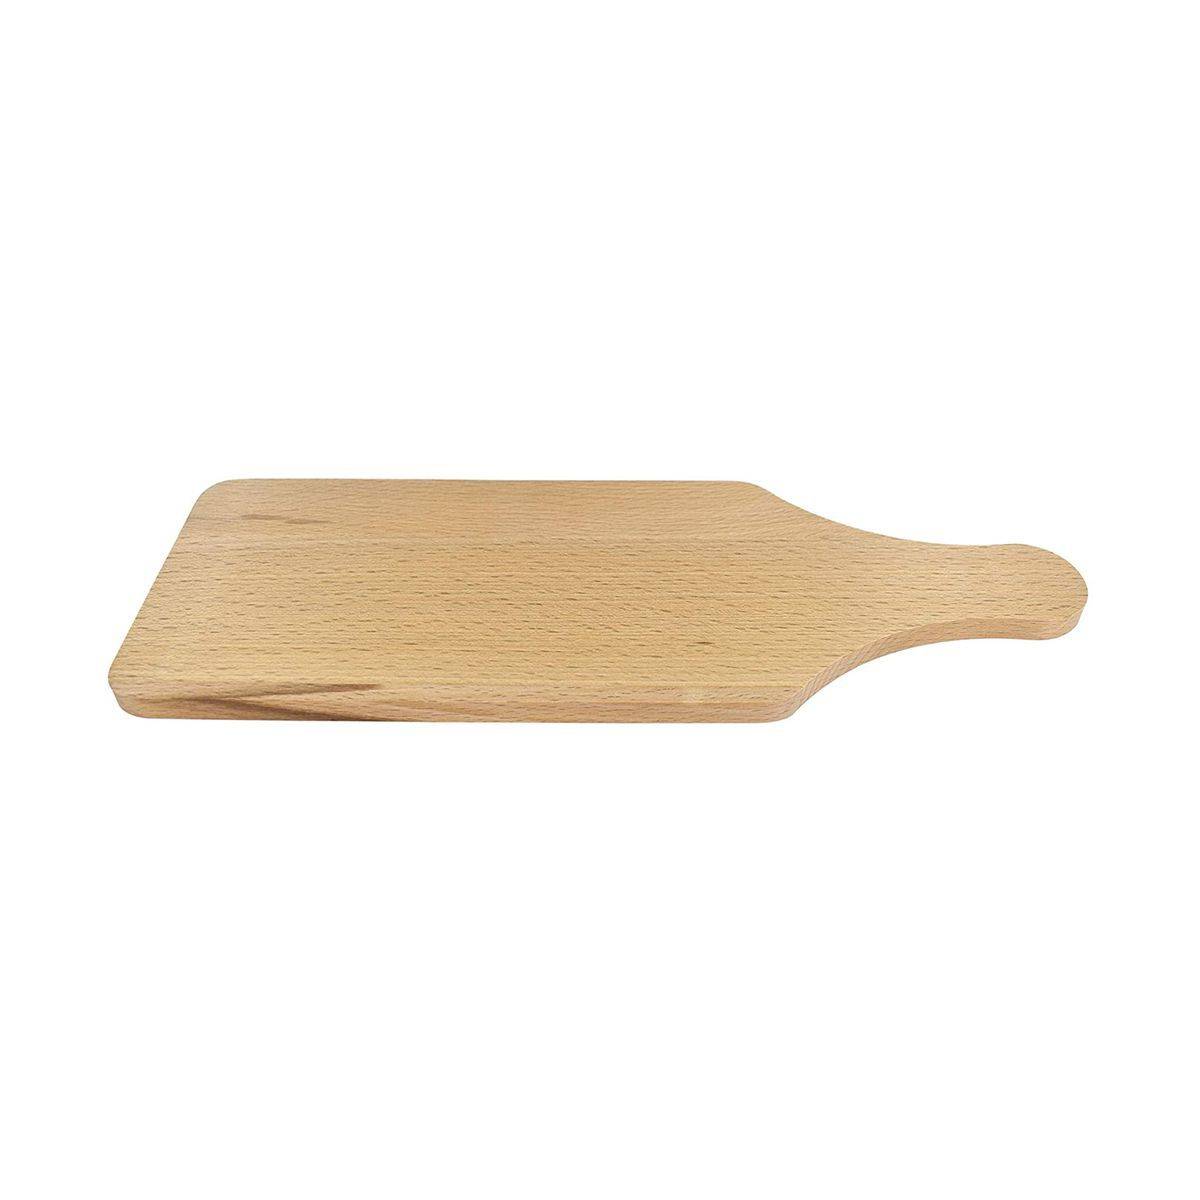 Planche à découper rectangulaire en bois, 27 x 10 cm Fackelmann Wood Edition ref. 0162050